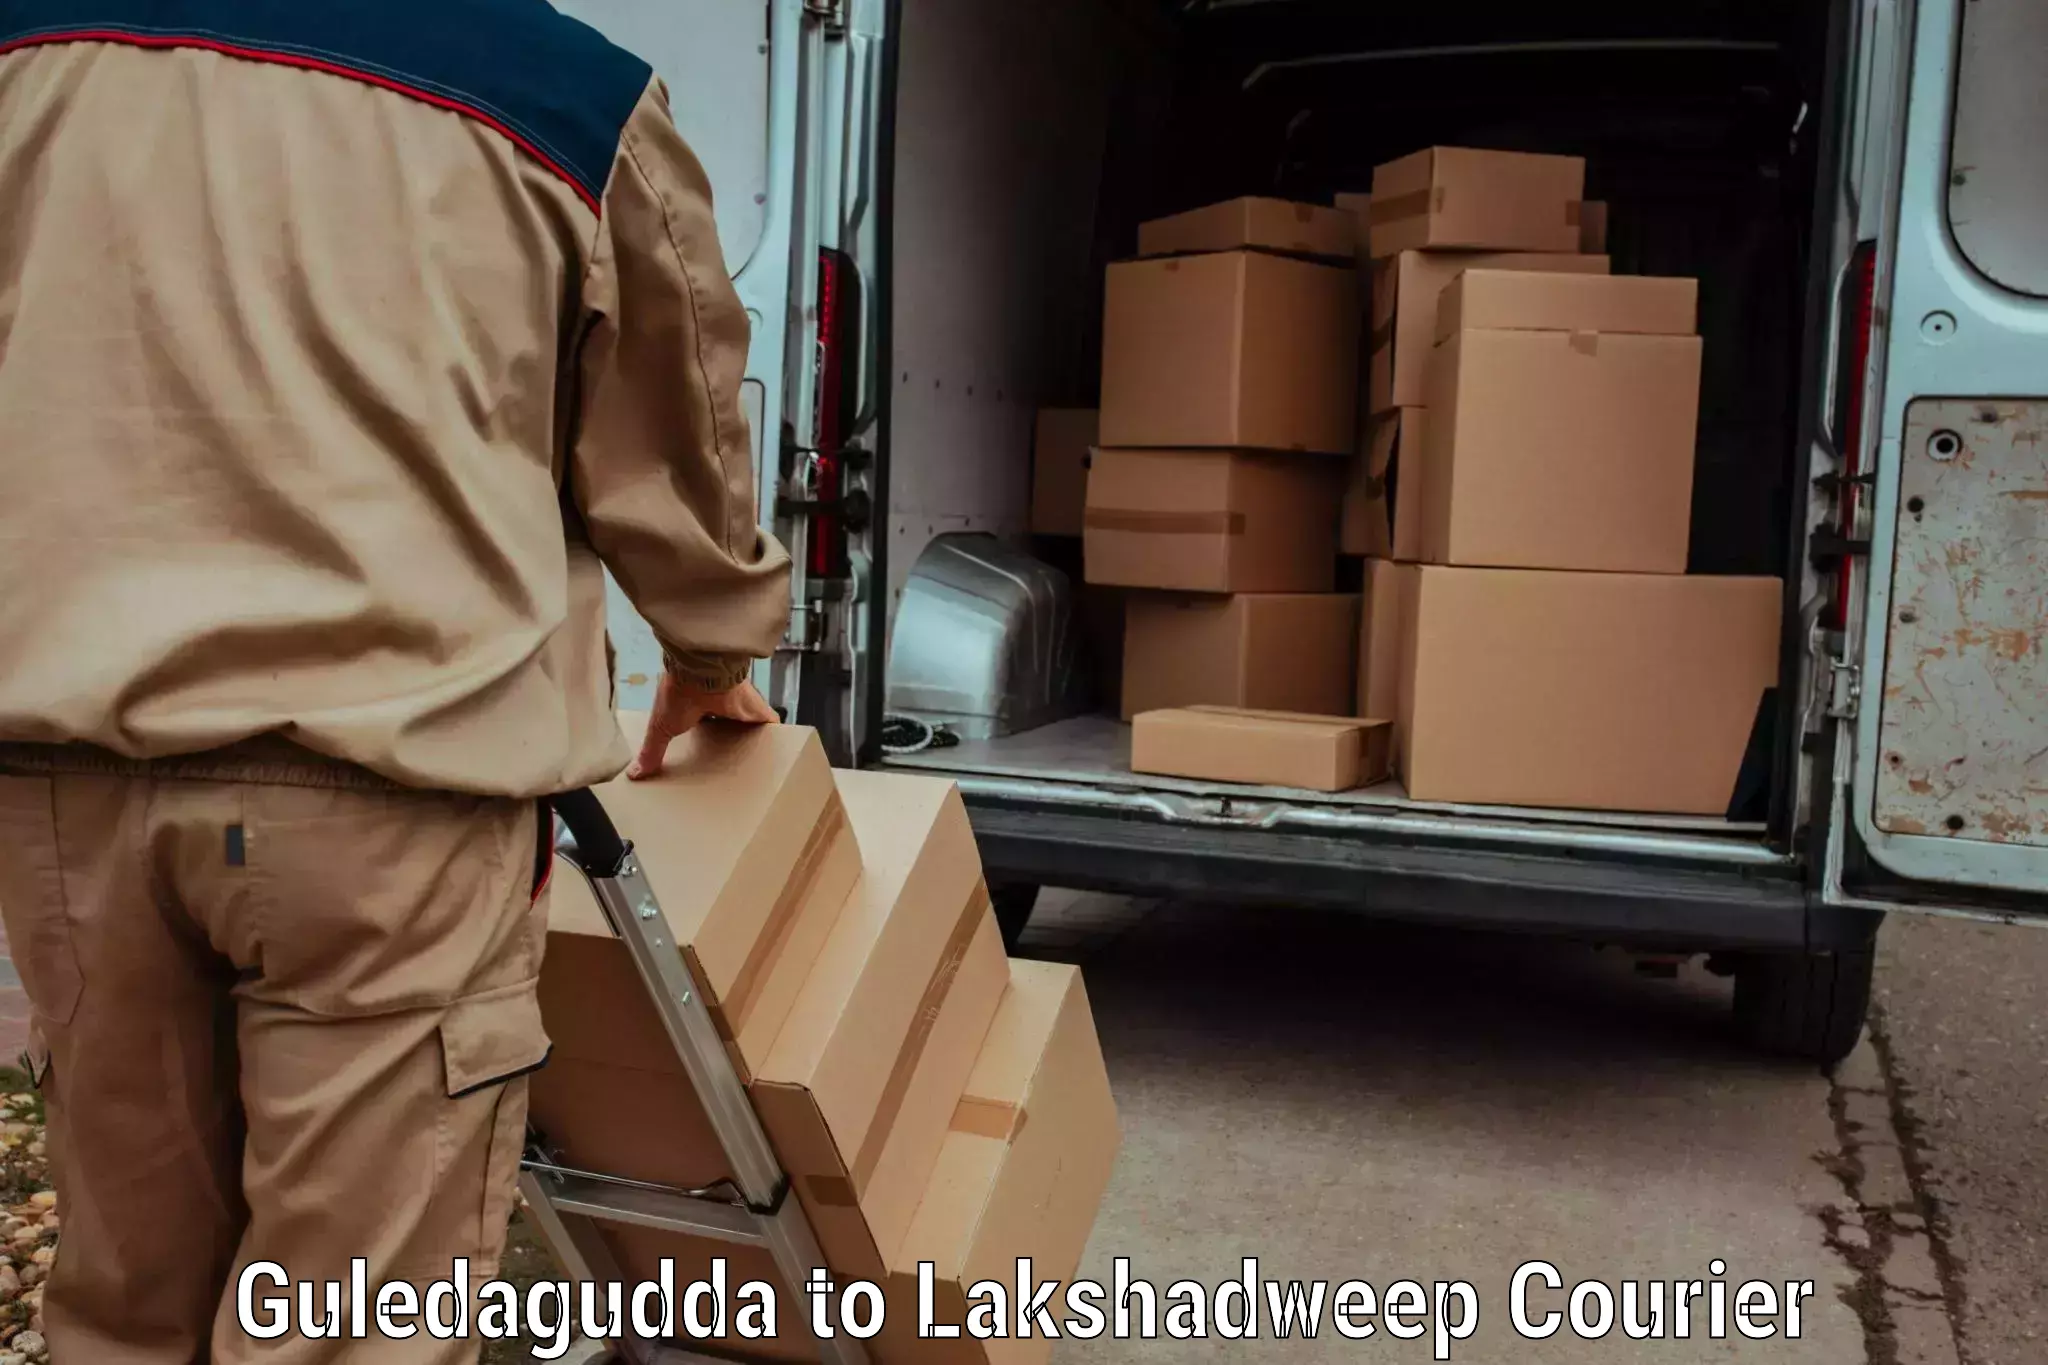 Express luggage delivery Guledagudda to Lakshadweep